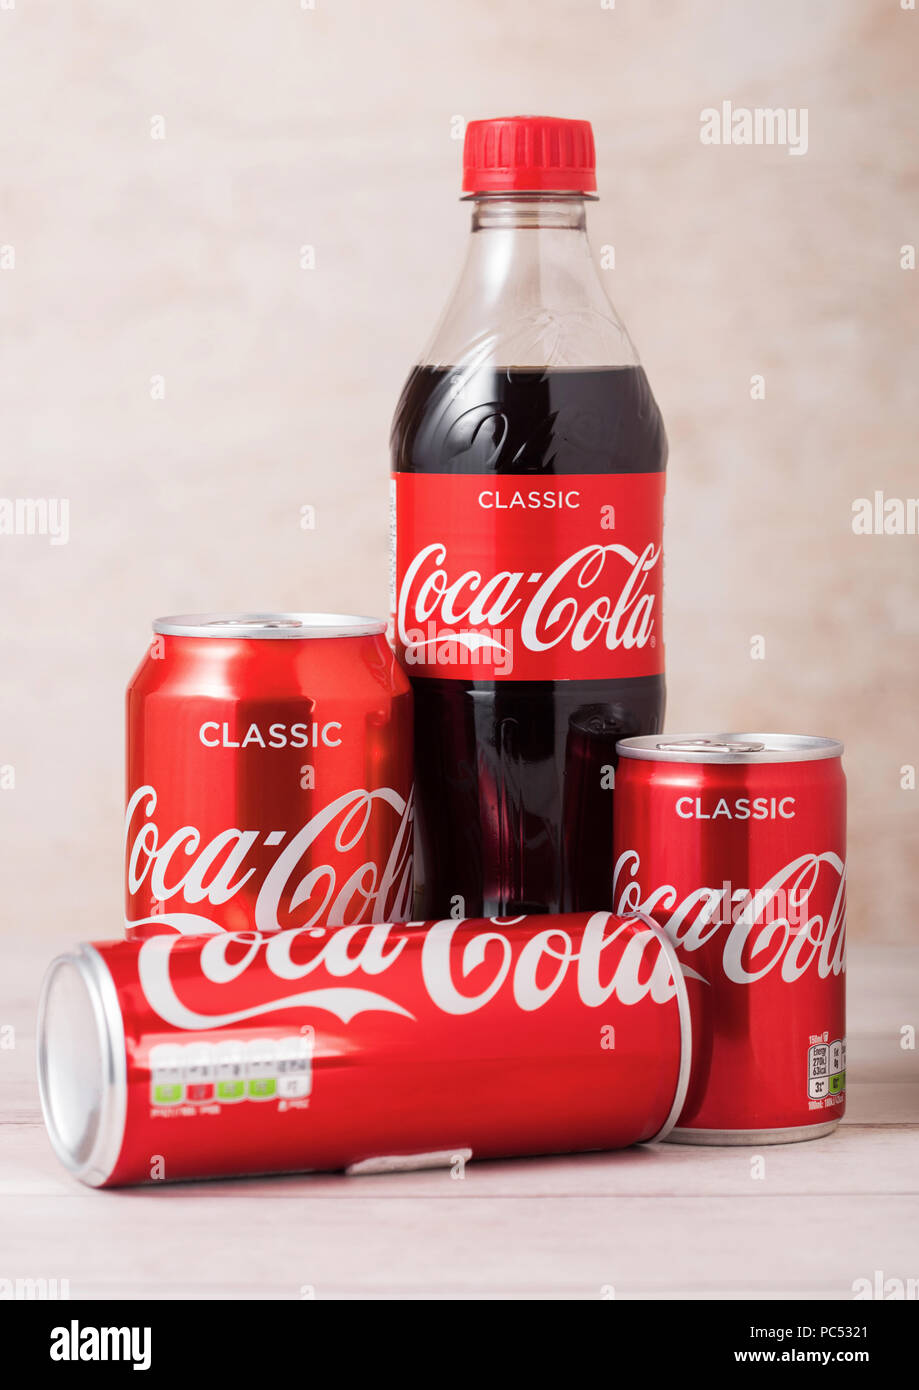 LONDON, UK - August 03, 2018: Plastikflasche und Aluminium Dosen Original Coca Cola Erfrischungsgetränke auf Holz. Beliebteste Getränk in der Welt. Stockfoto